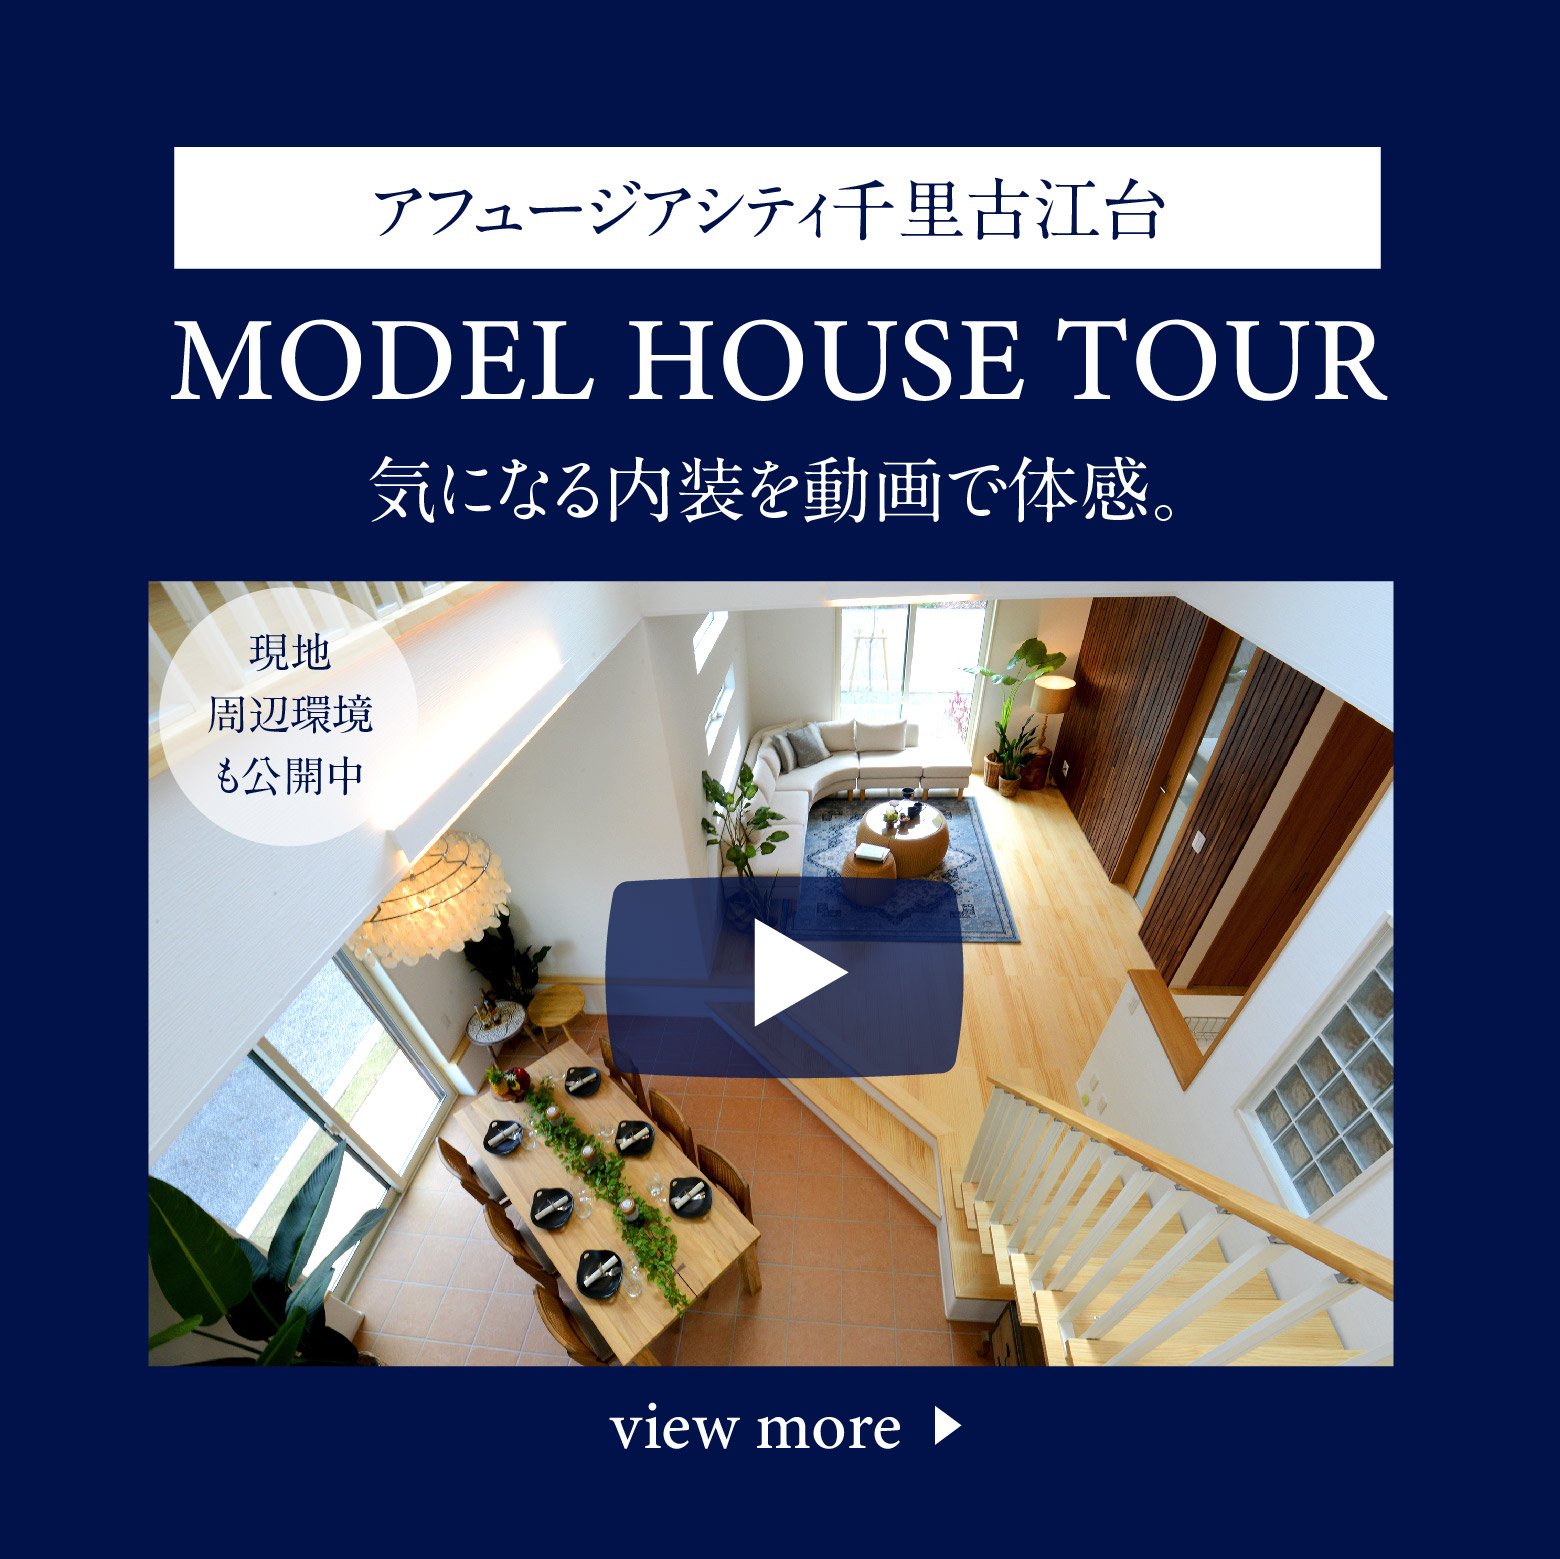 【モデルハウスツアー動画】アフュージアシティ千里古江台、動画で体感モデルハウスツアー公開中です。